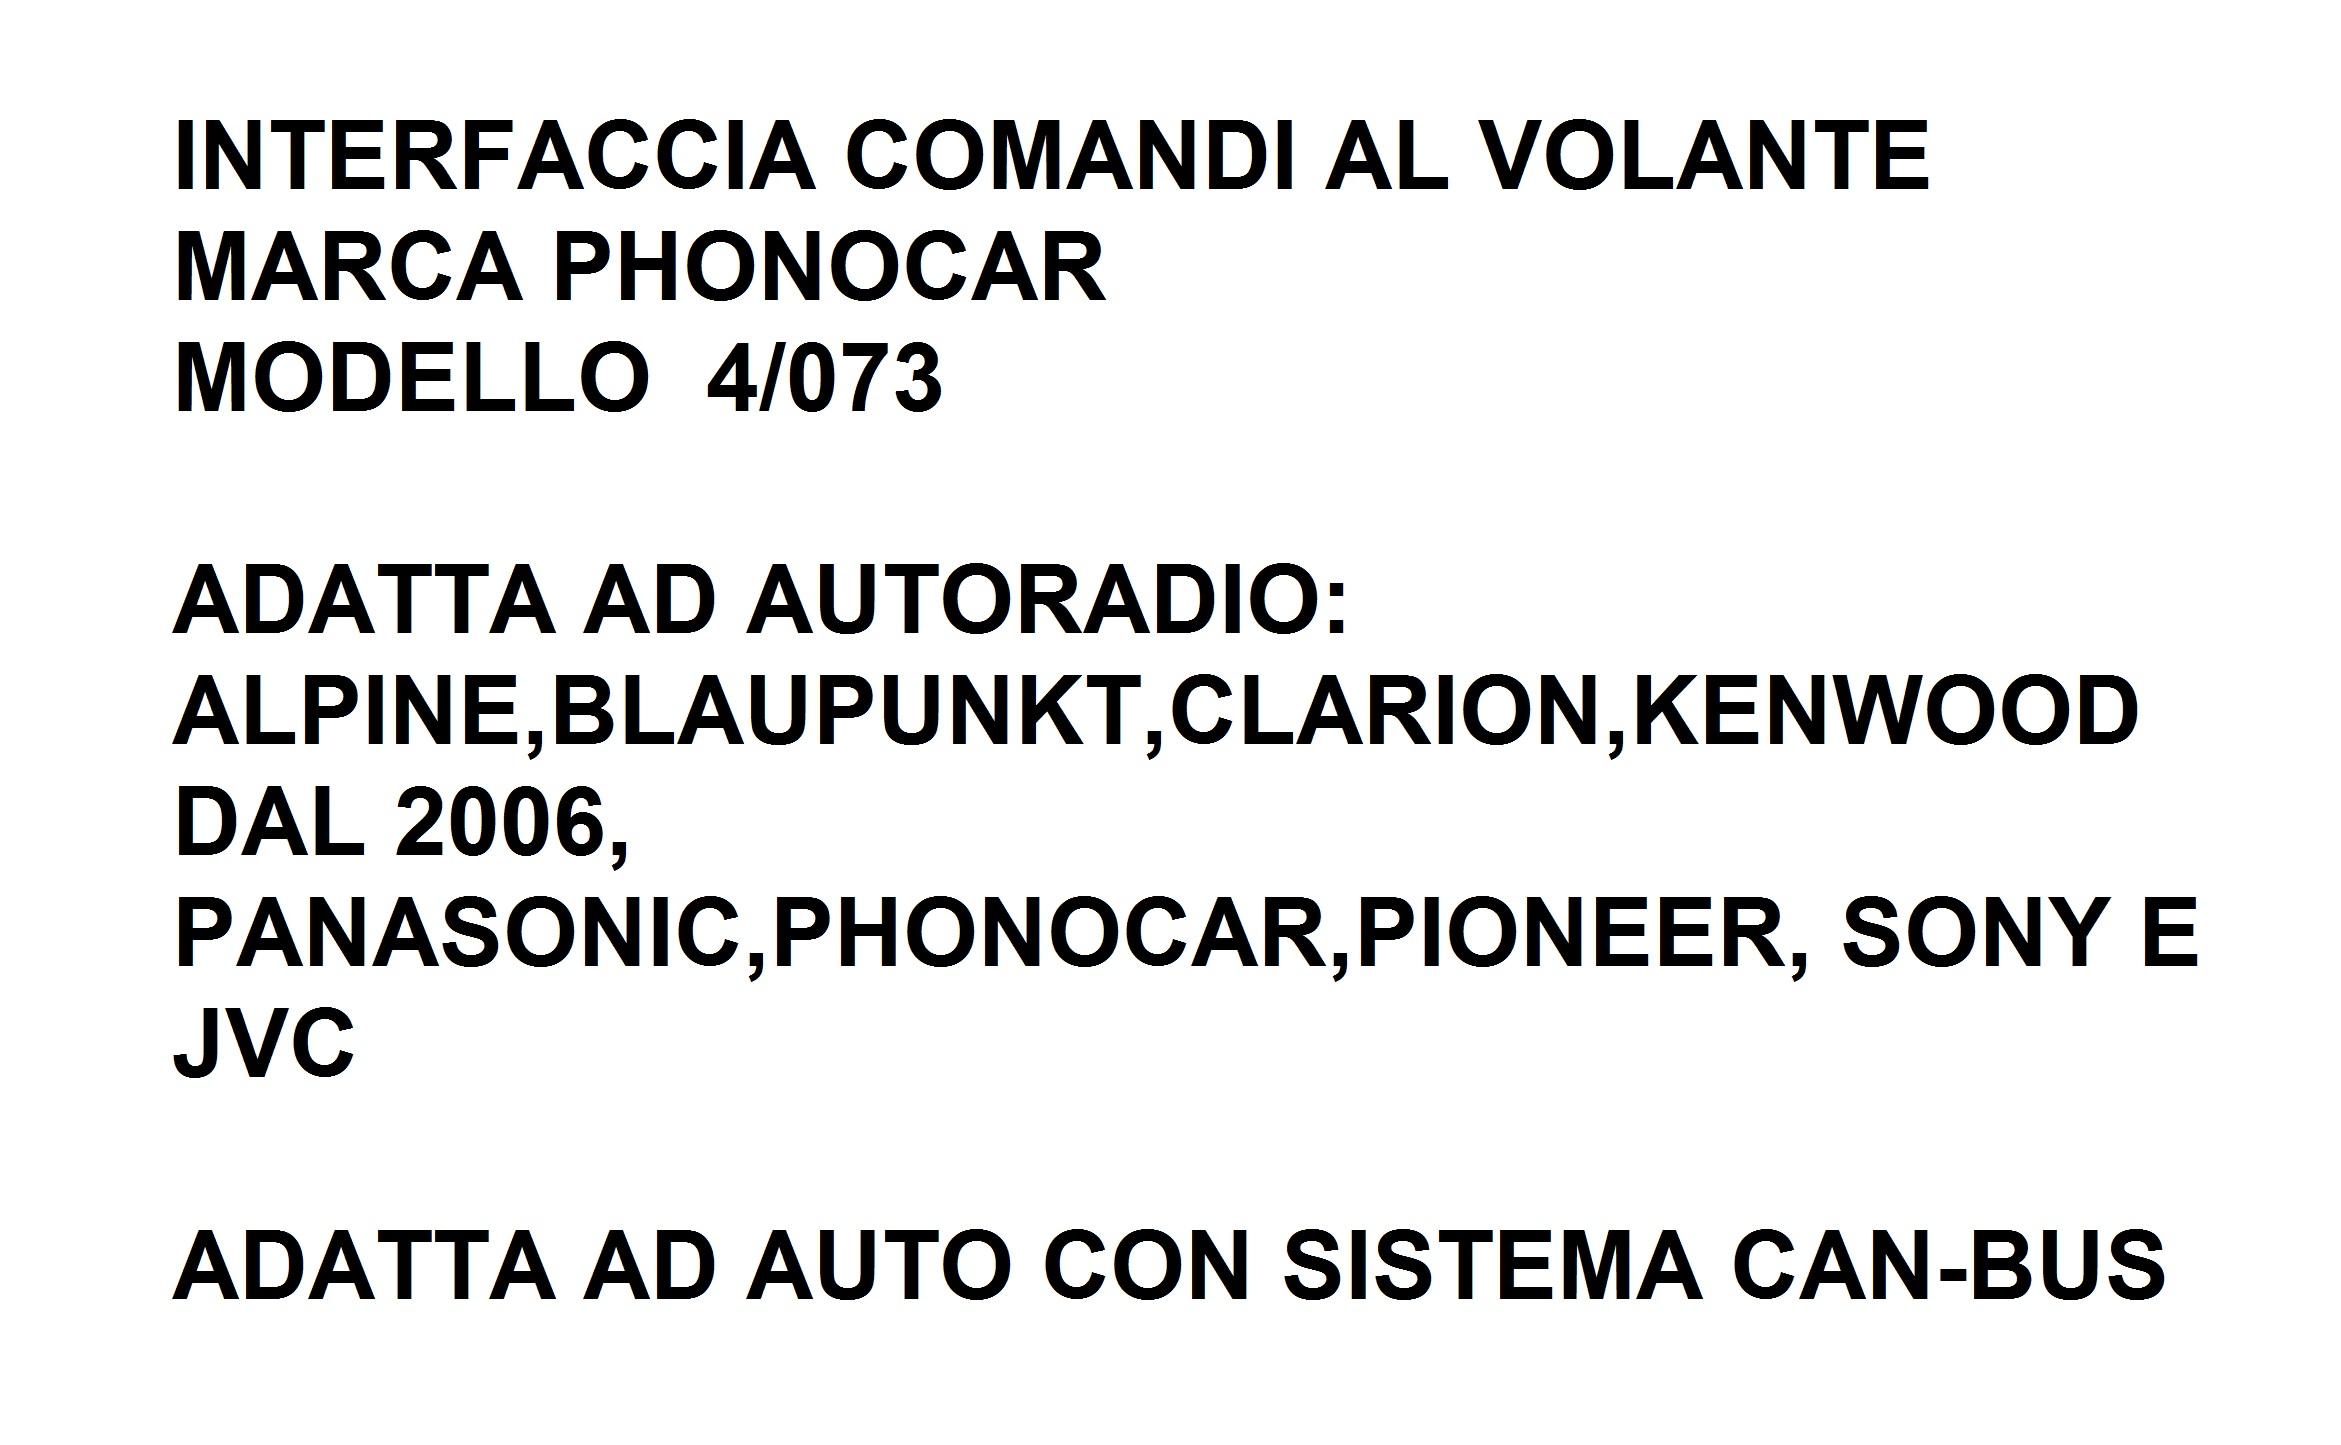 9550 - ALFA GIULIETTA DAL 2010 INTERFACCIA CAN-BUS&COMANDI AL VOLANTE 4/073 PHONOCAR